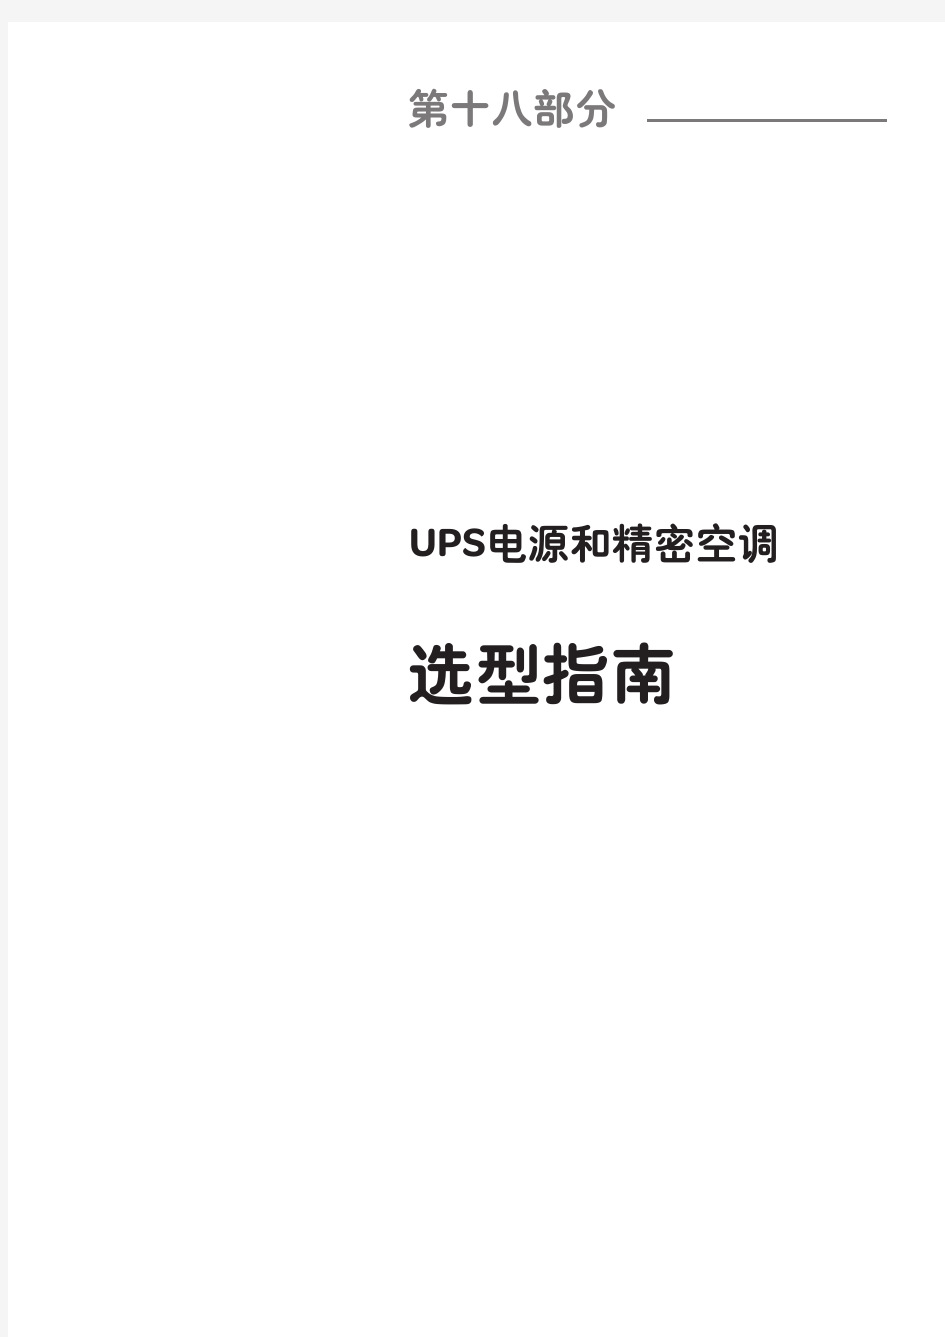 施耐德产品选型手册-第十八部分(UPS)